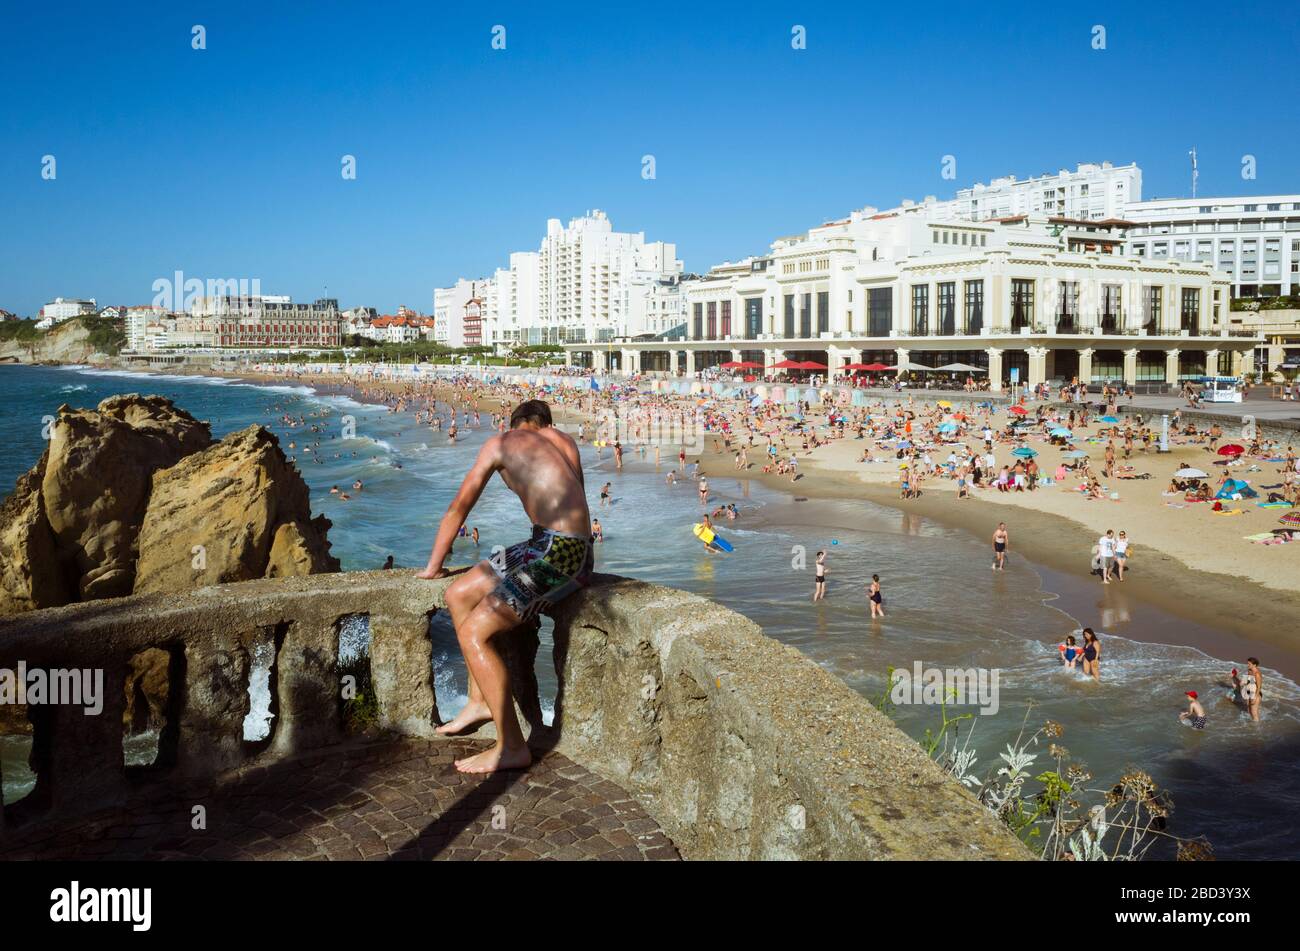 Biarritz, Pays basque français, France - 19 juillet 2019 : un jeune homme regarde la Grande Plage, la plus grande plage de la ville. Casino de style art déco Banque D'Images